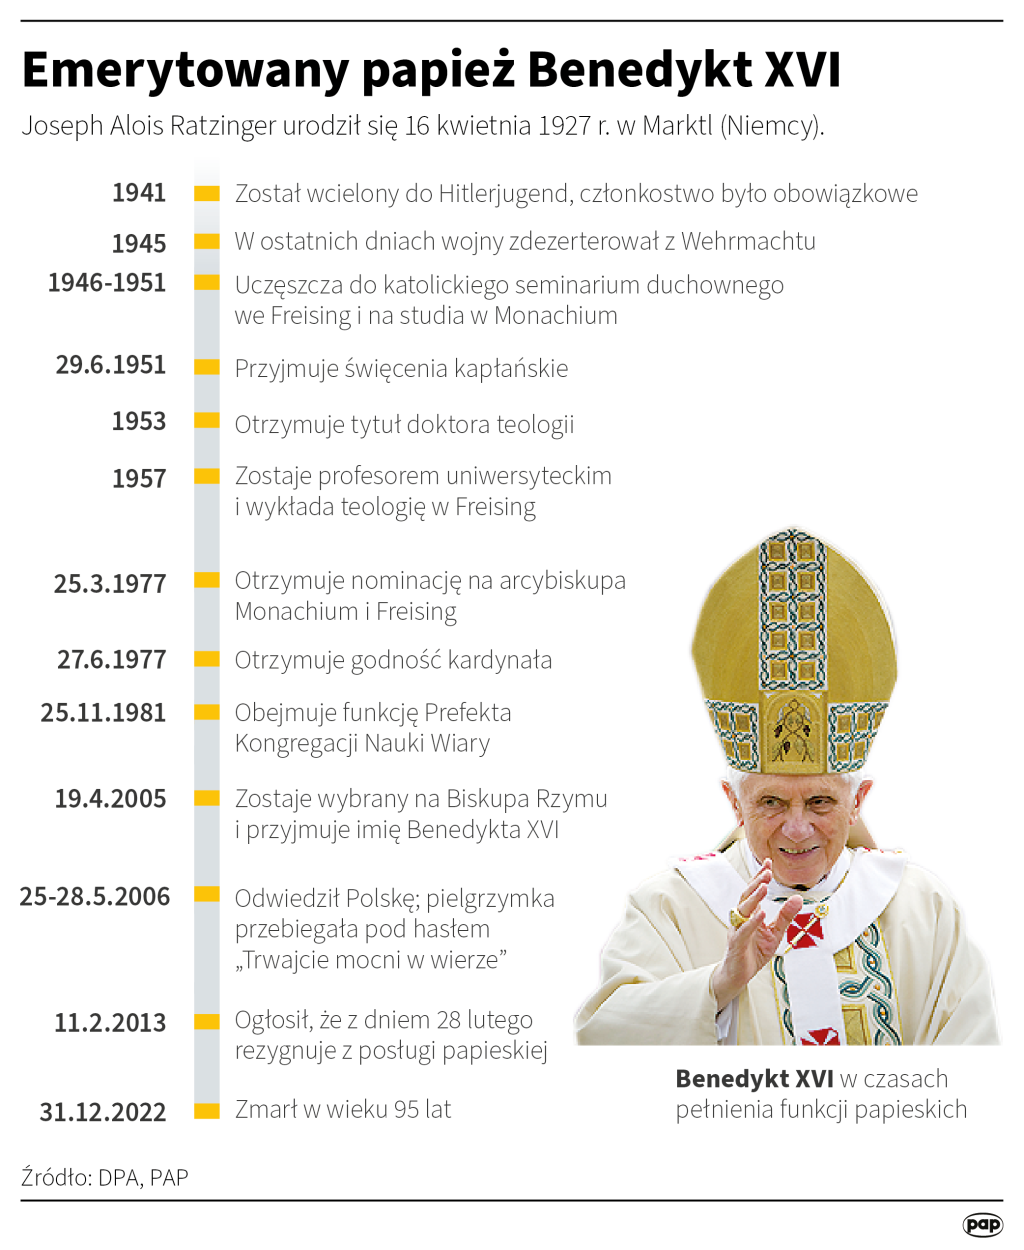 Emerytowany papież Benedykt XVI, autorzy: PAP/ Ziemienowicz Adam , Maciej Zieliński 